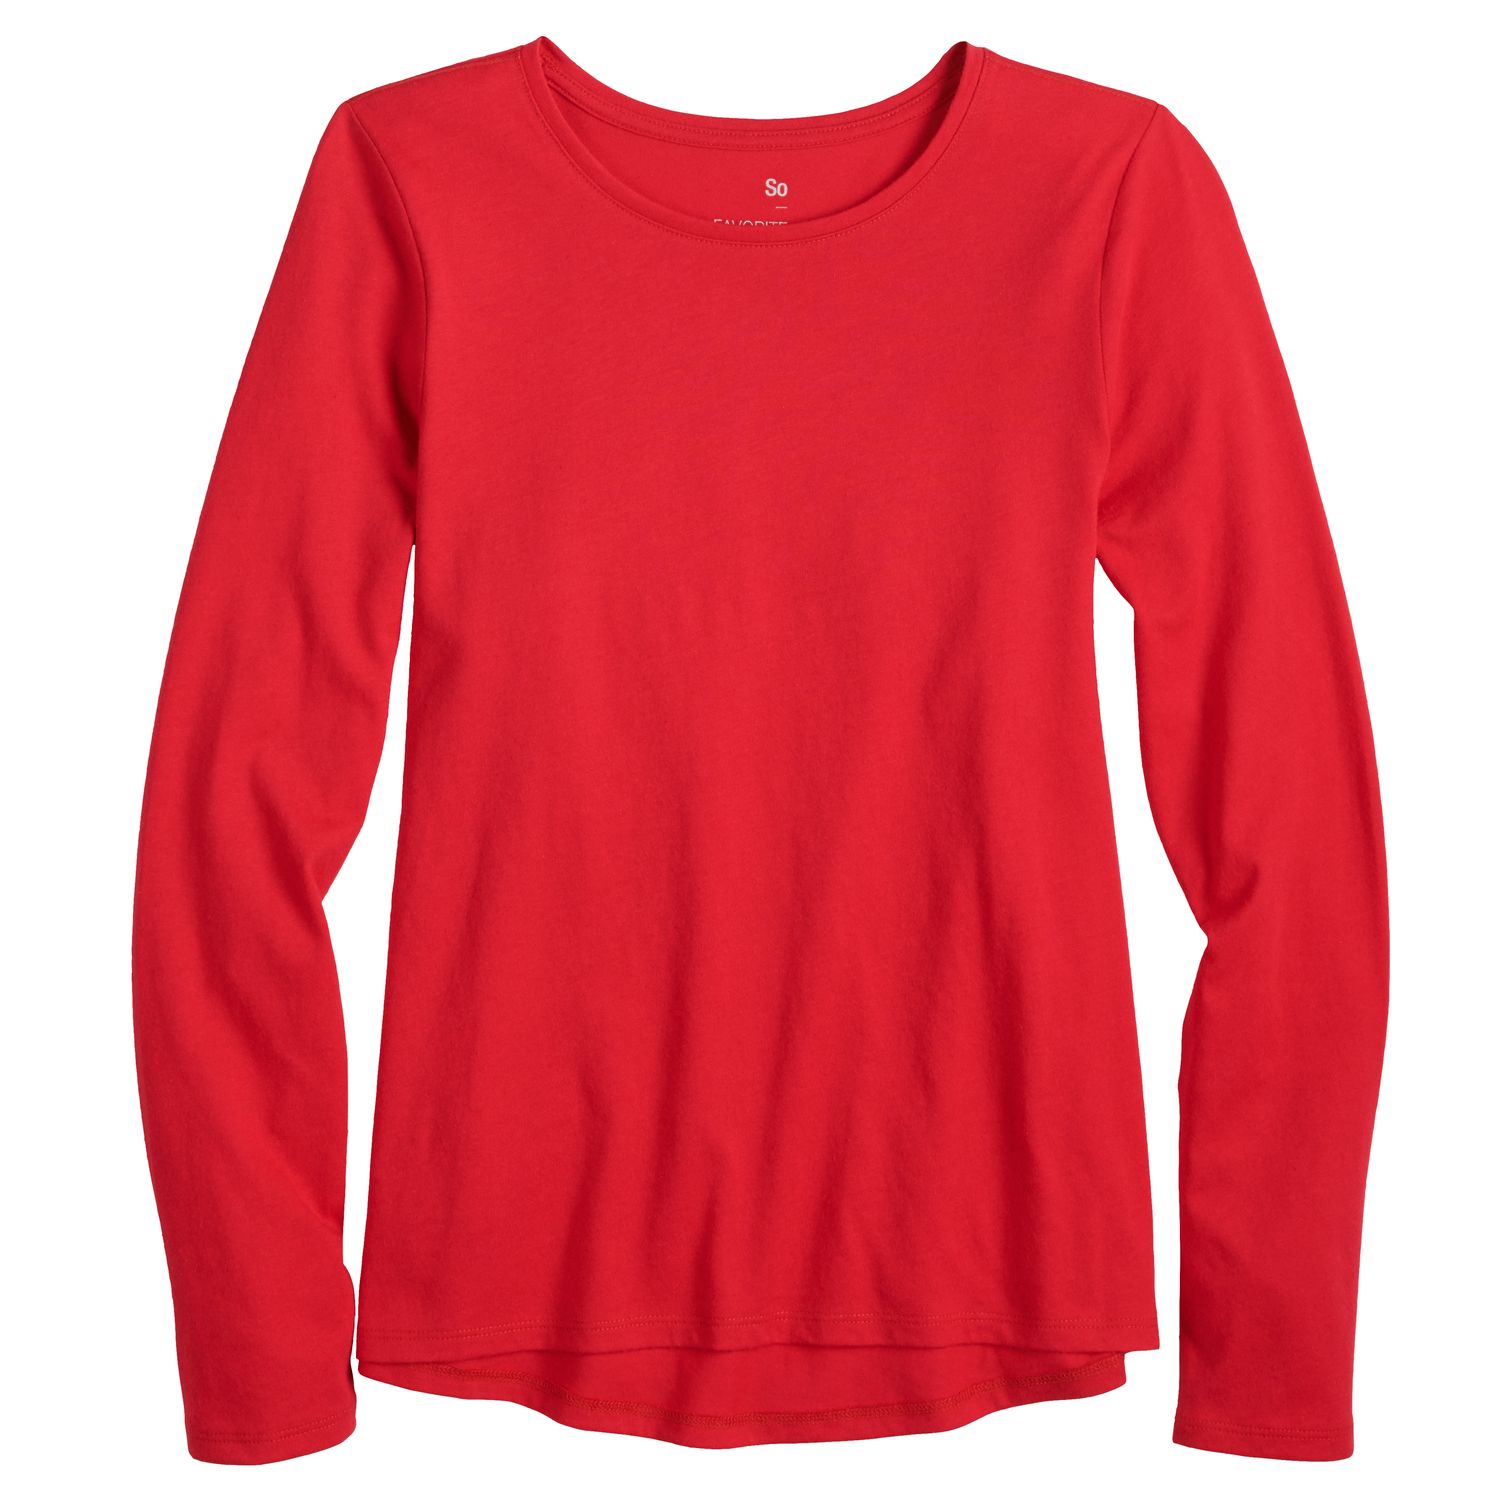 girls plain red tshirt